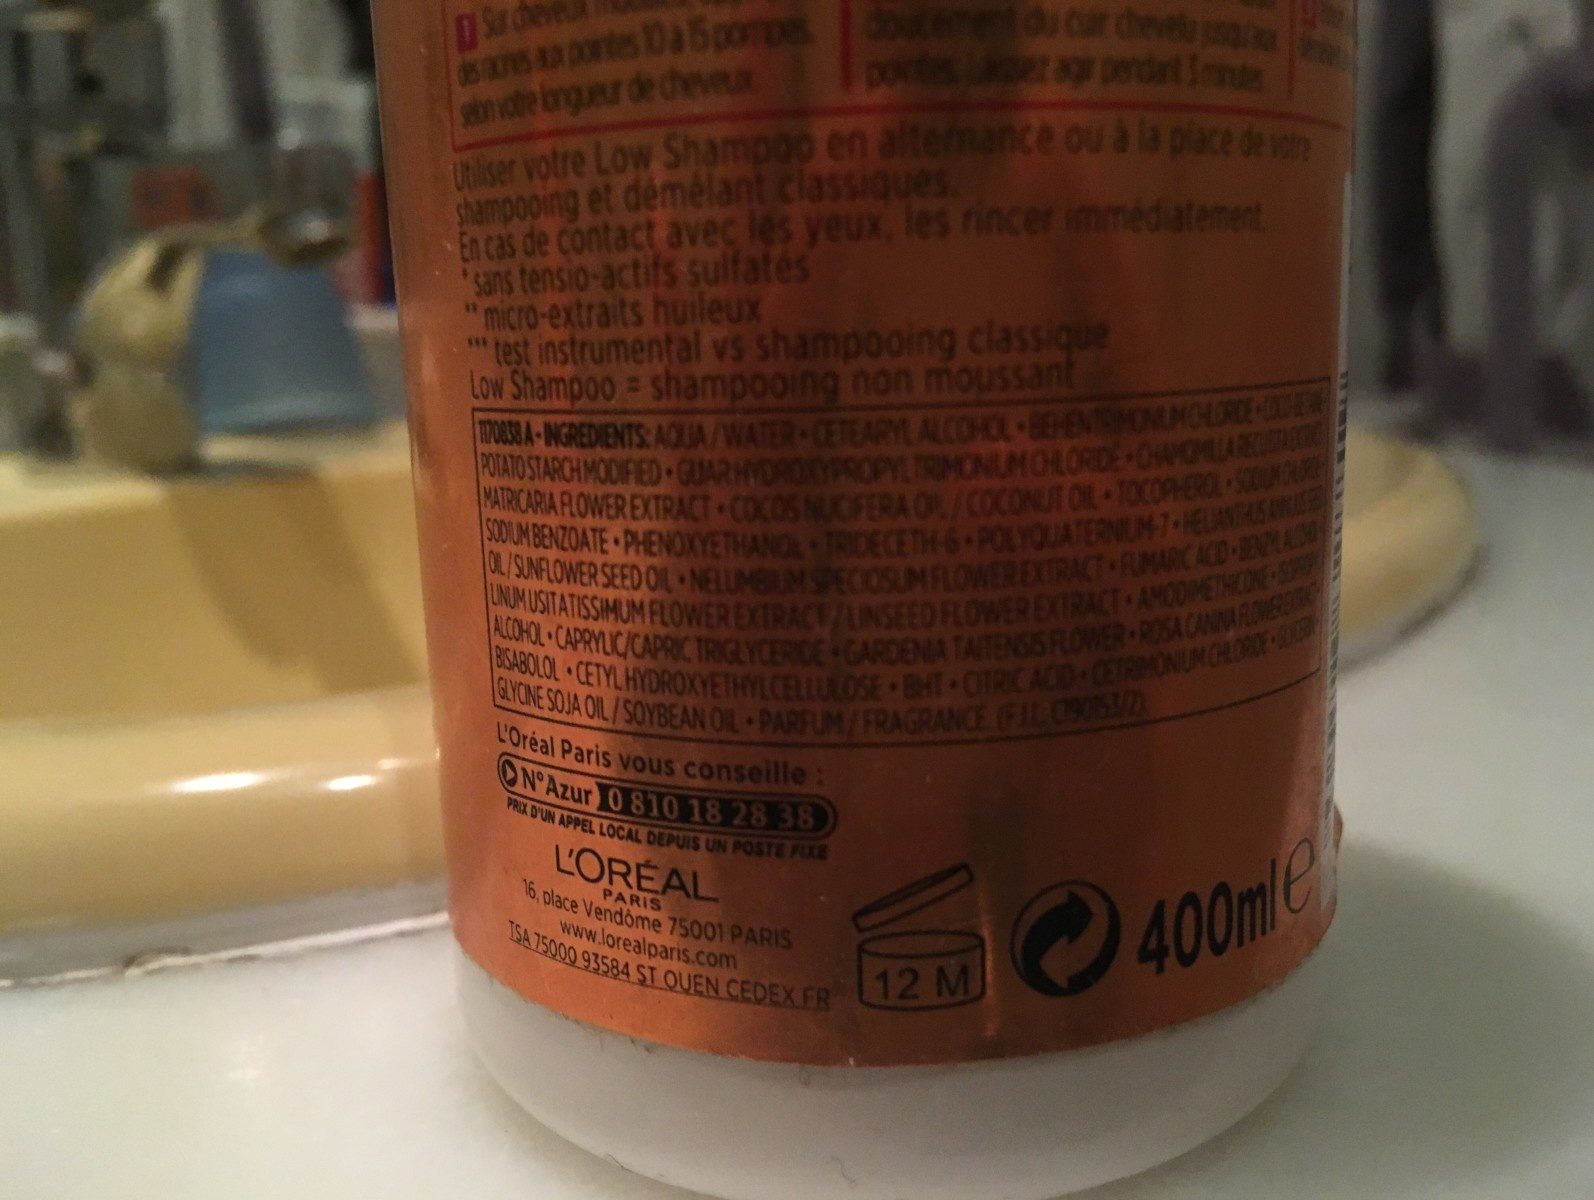 Low shampoo huile extraordinaire - Ingrédients - fr